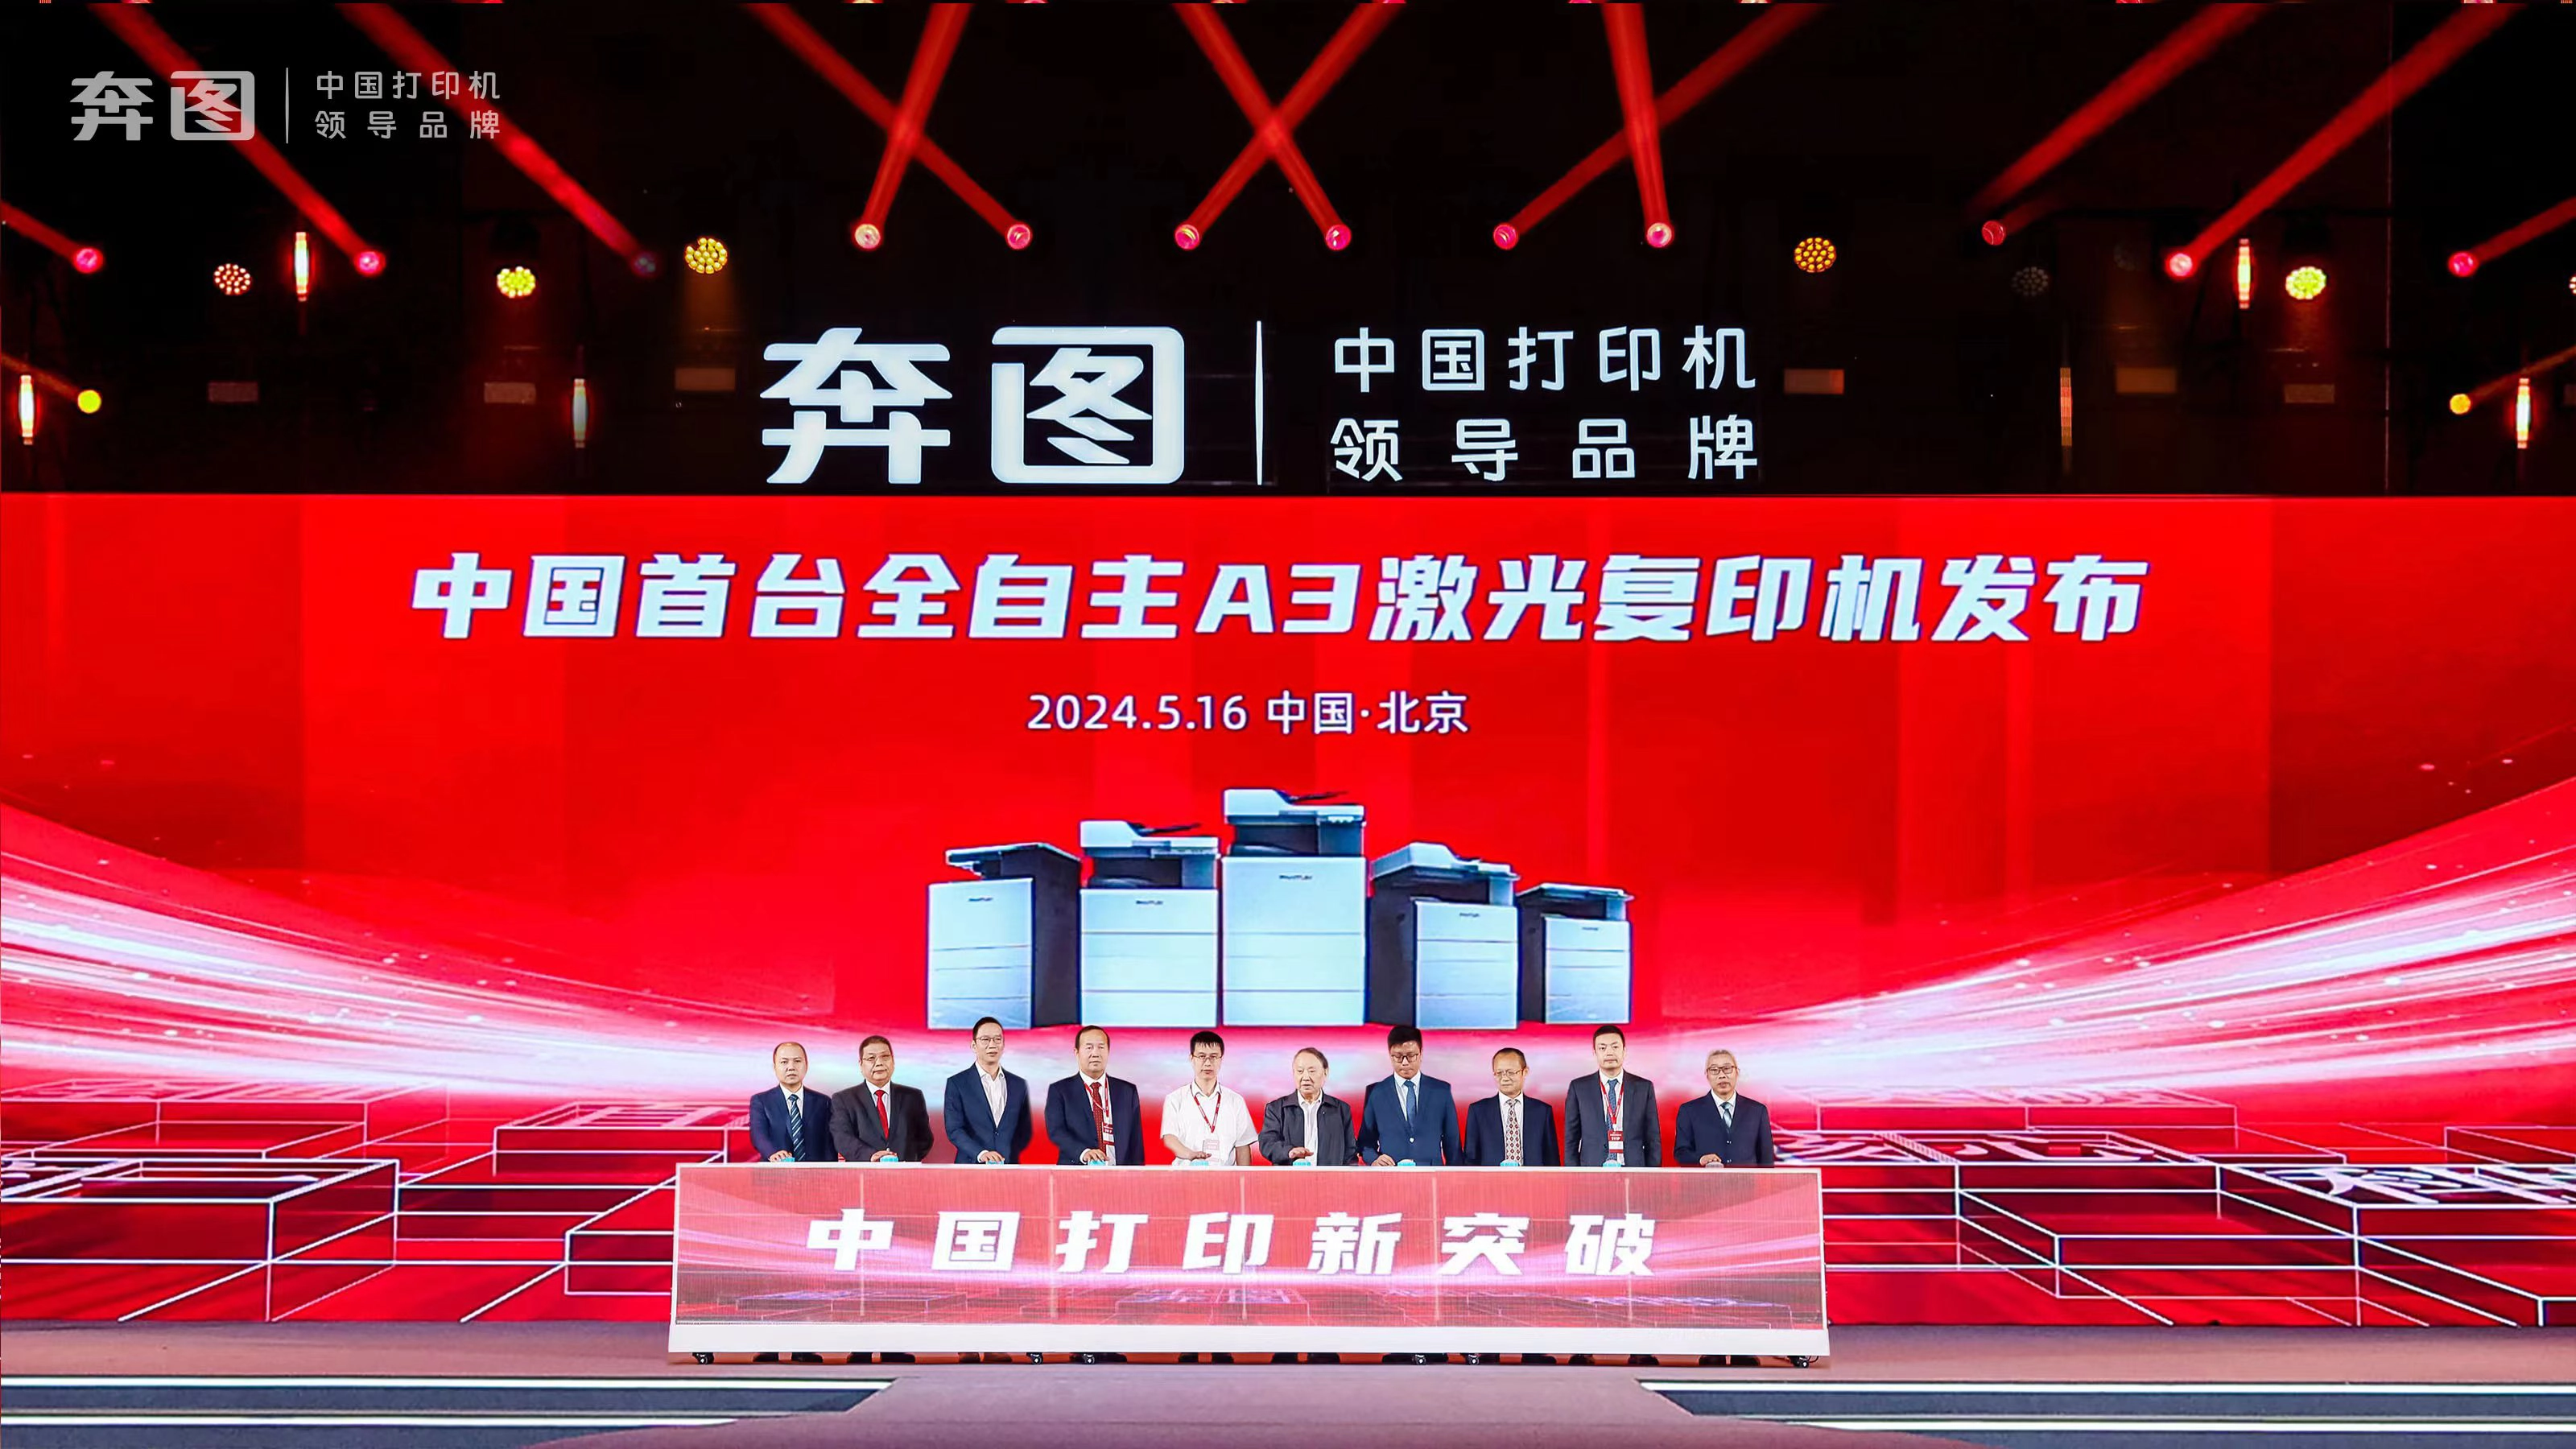 奔图发布中国首台全自主A3激光复印机，引领行业技术革新